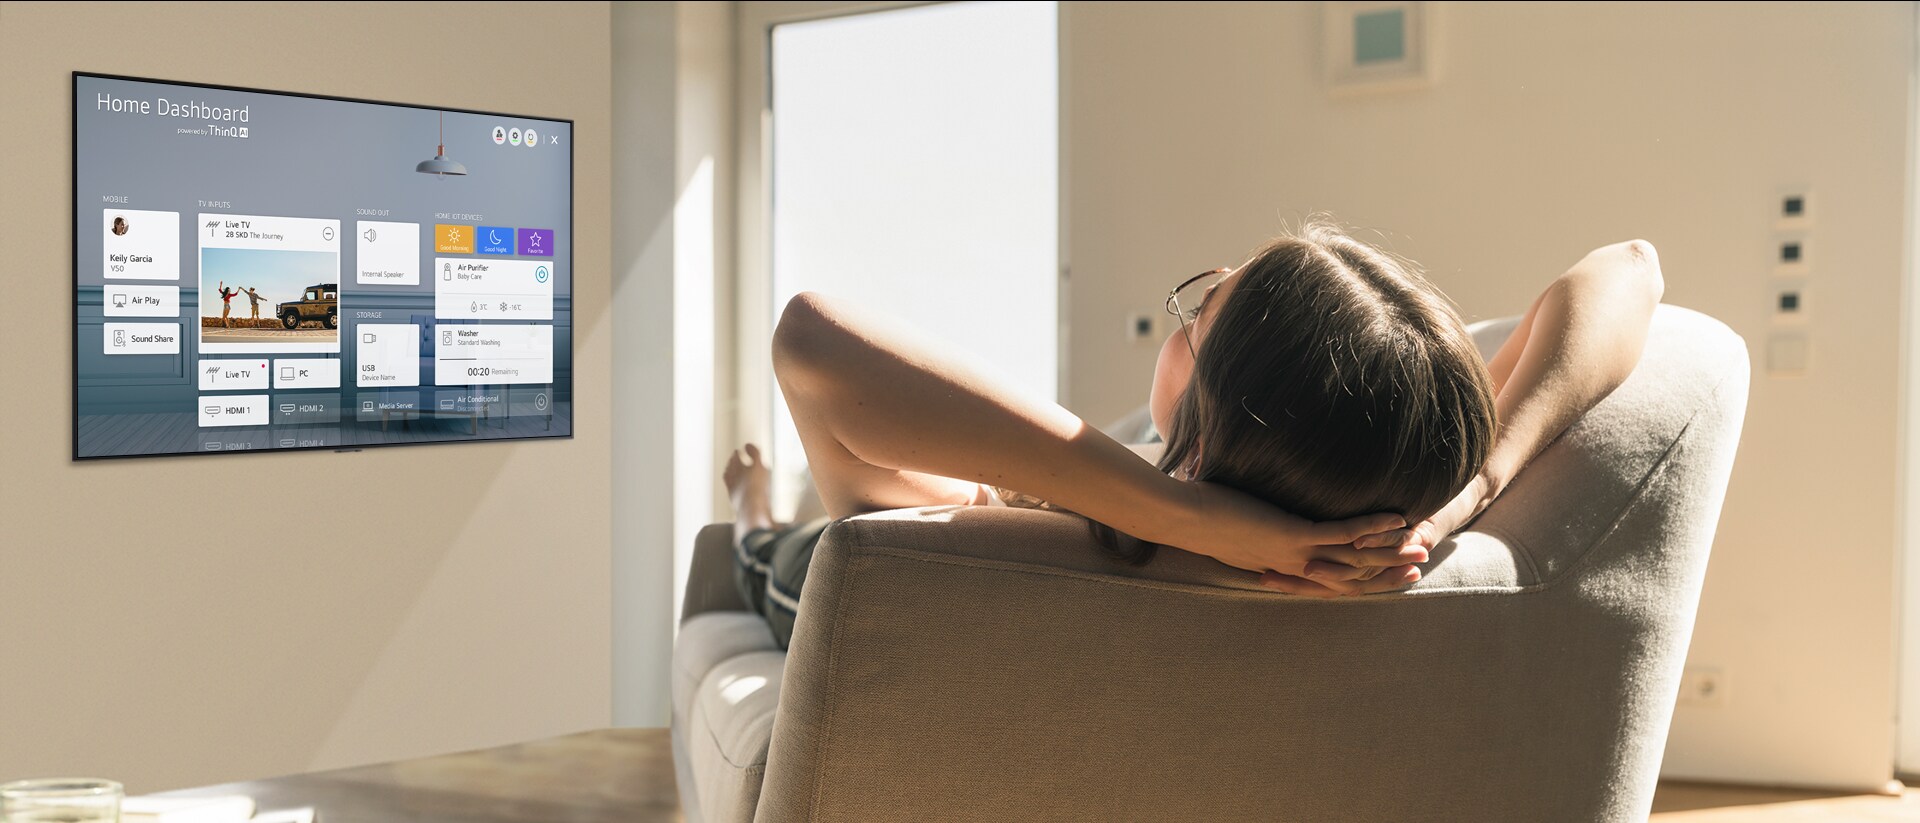 Жена лежи на дивана и казва на телевизора да намали температурата, а на телевизионния екран се вижда таблото за управление на дома.